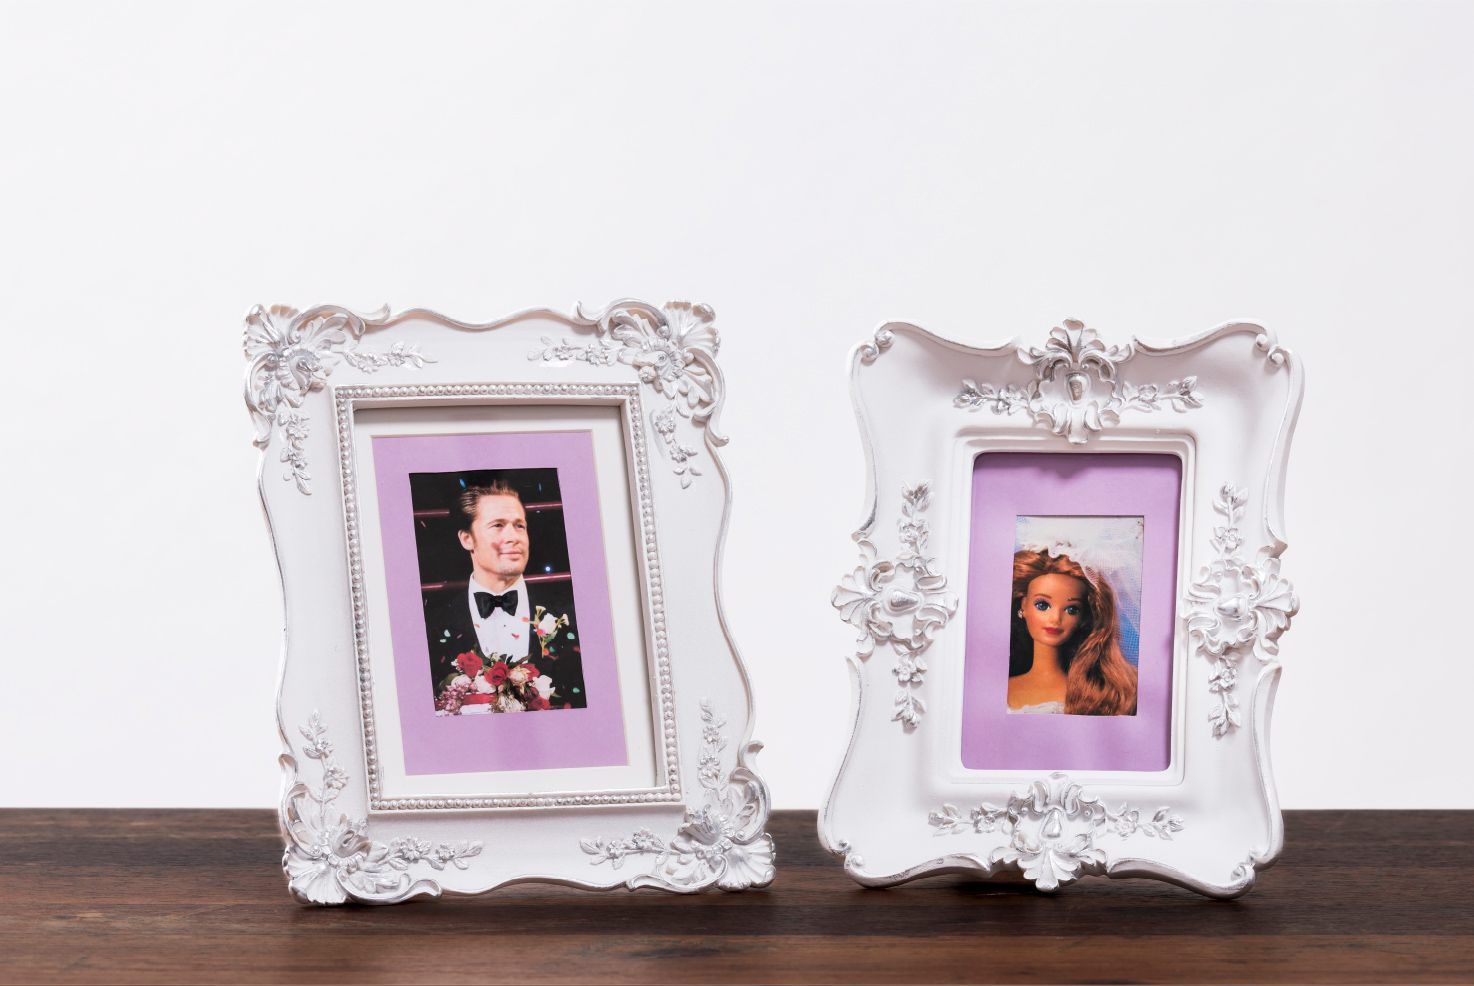 Kunst-Objekte von Josephine Riemann: Detail von gerahmten Fotografien von Brad Pit und Barbie als Hochzeitspaar.  